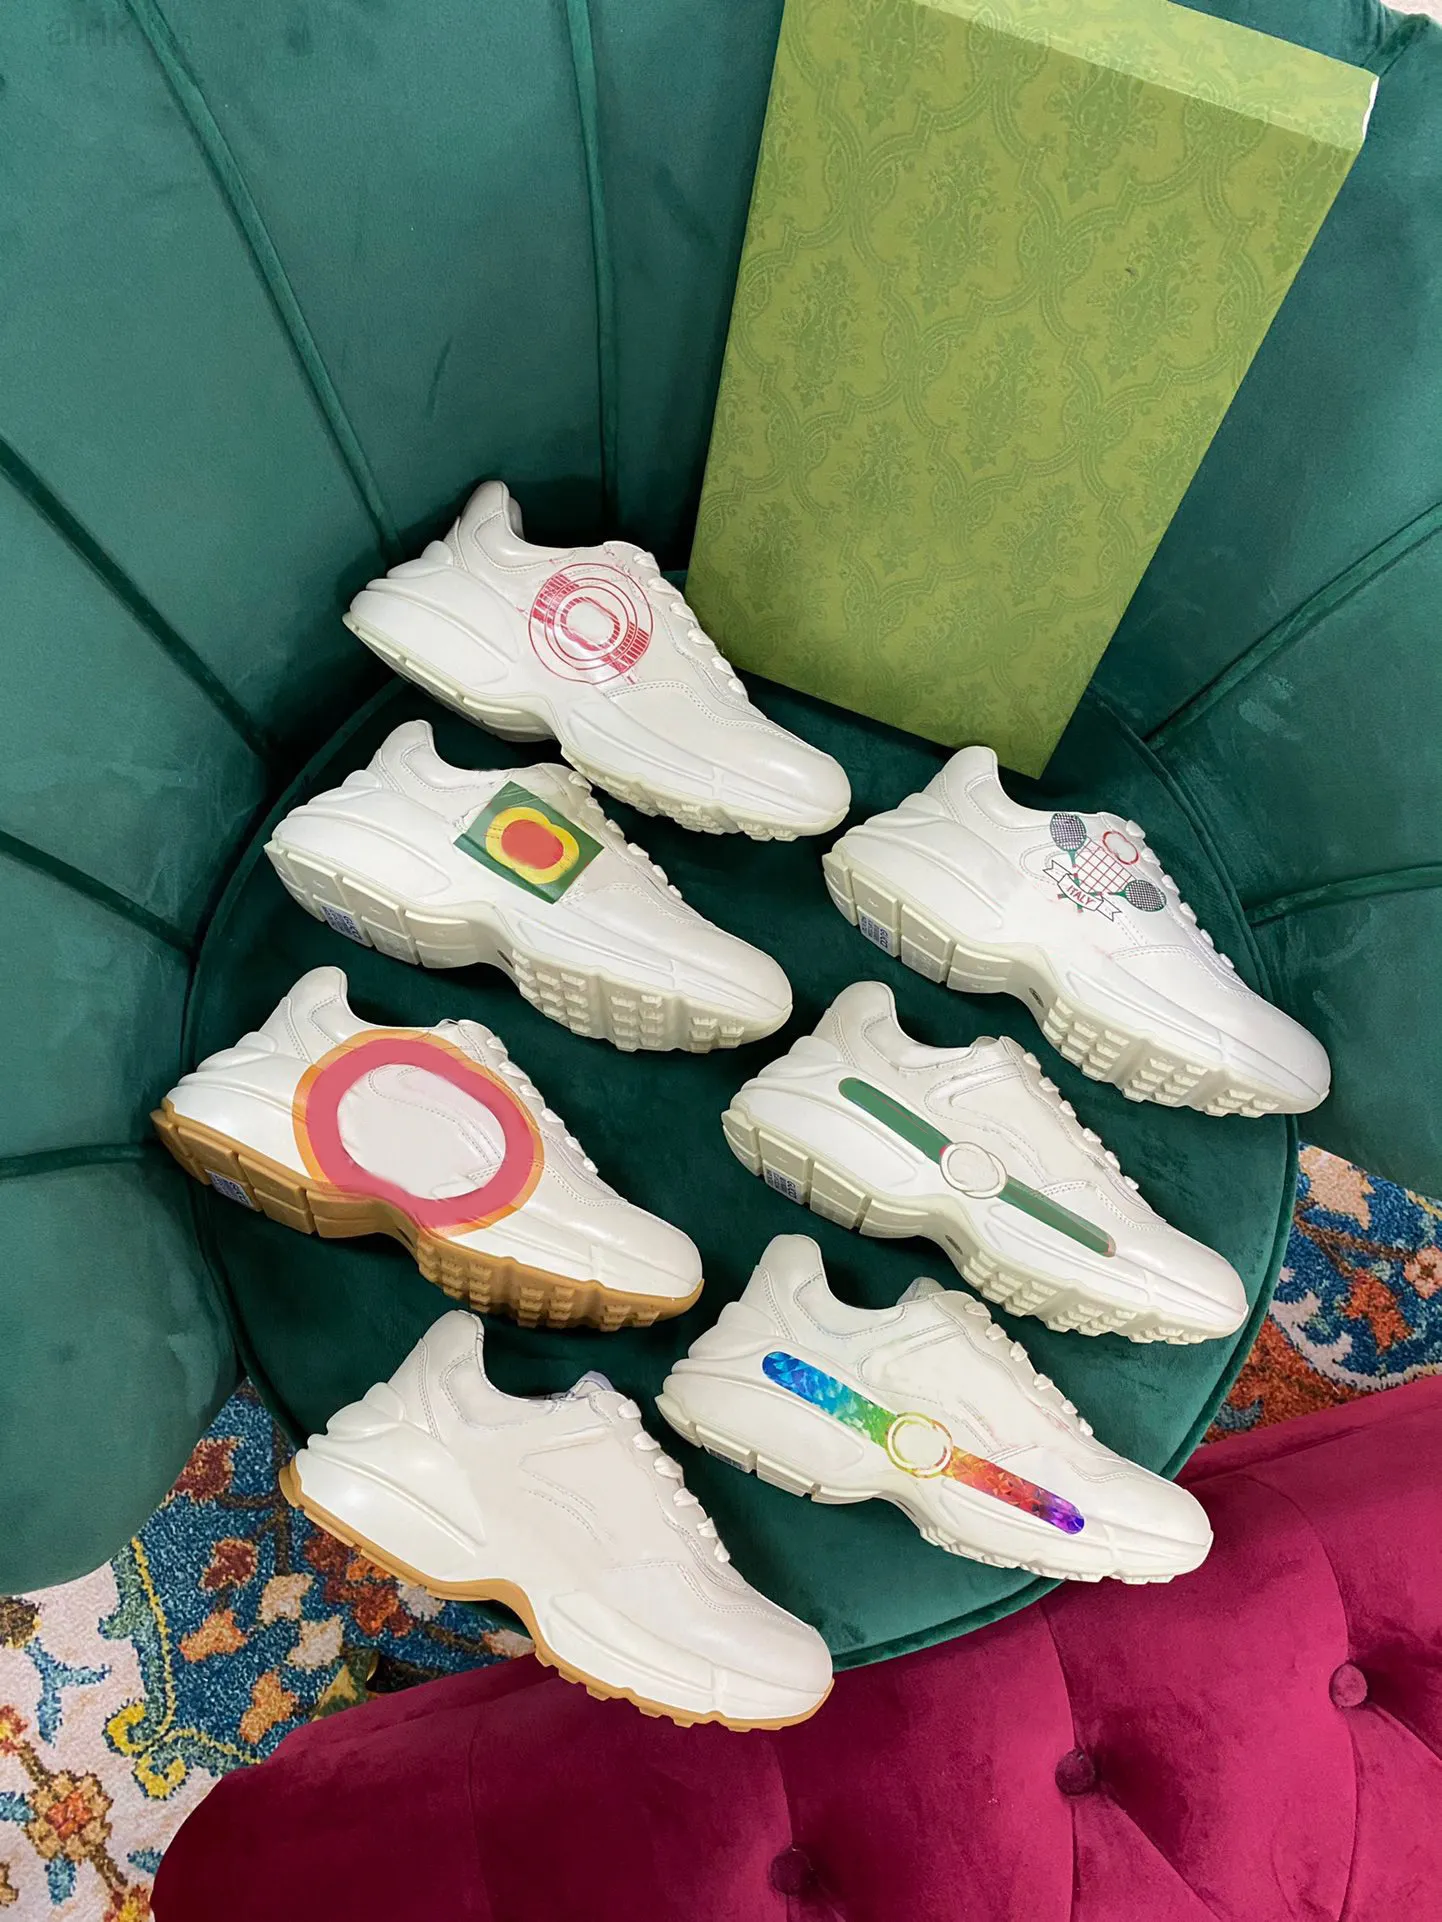 Дизайнерские кроссовки Rhyton Ботинки для обуви Мужчины Женщины Кроссовки Vintage Luxury Chaussures Женская спортивная повседневная обувь Дизайнеры Runner Sneaker